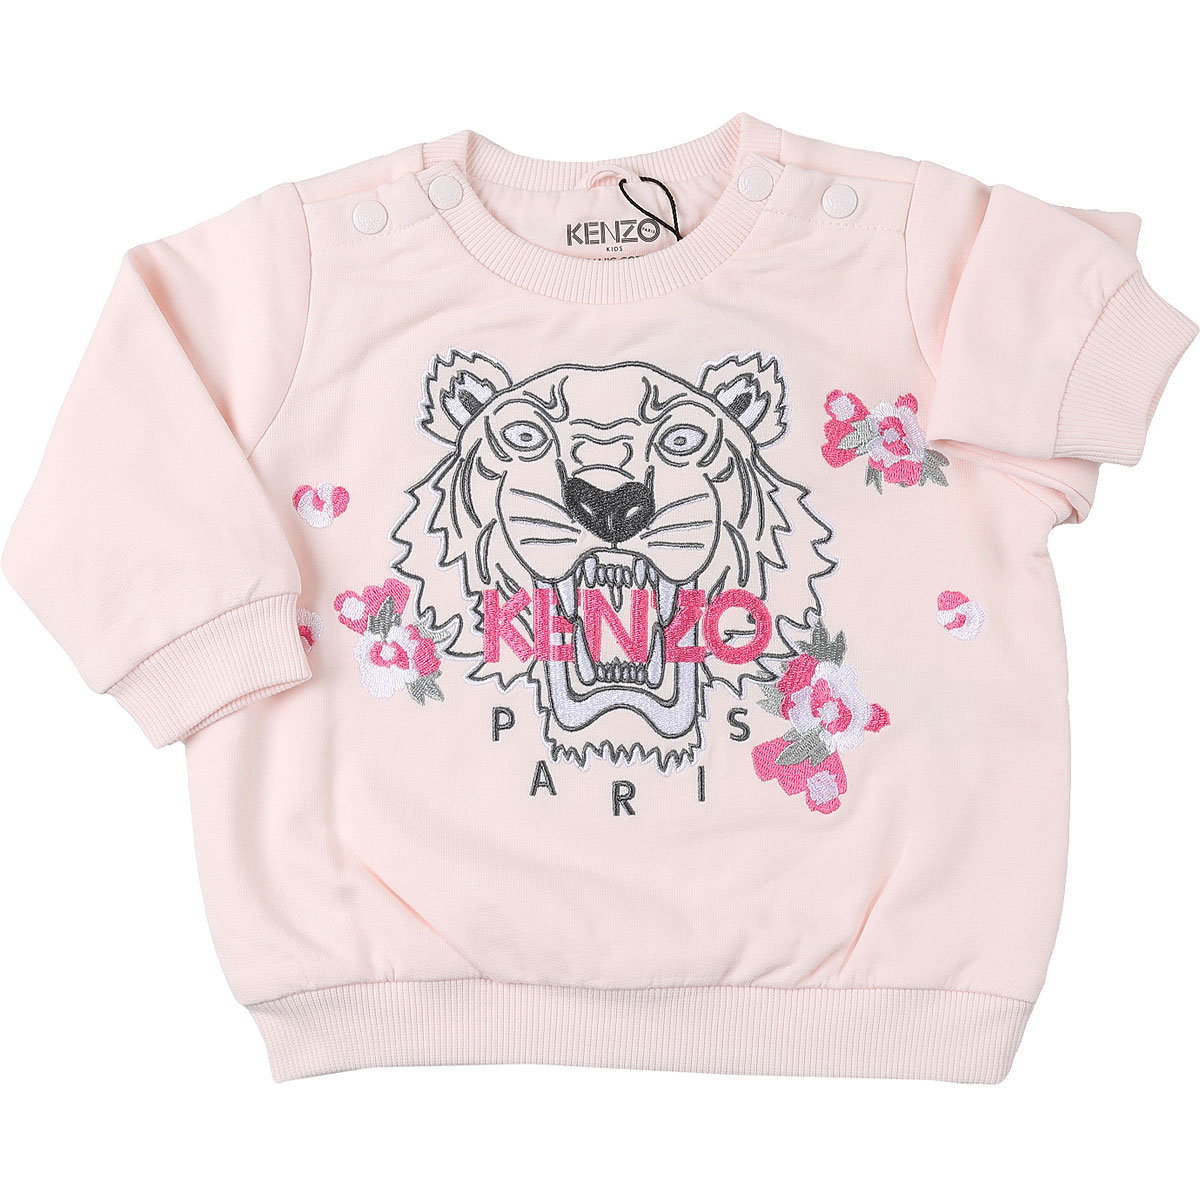 Kenzo Baby Sweatshirt & Kapuzenpullover für Mädchen Günstig im Sale, Hellpink, Baumwolle, 2017, 3Y 6M